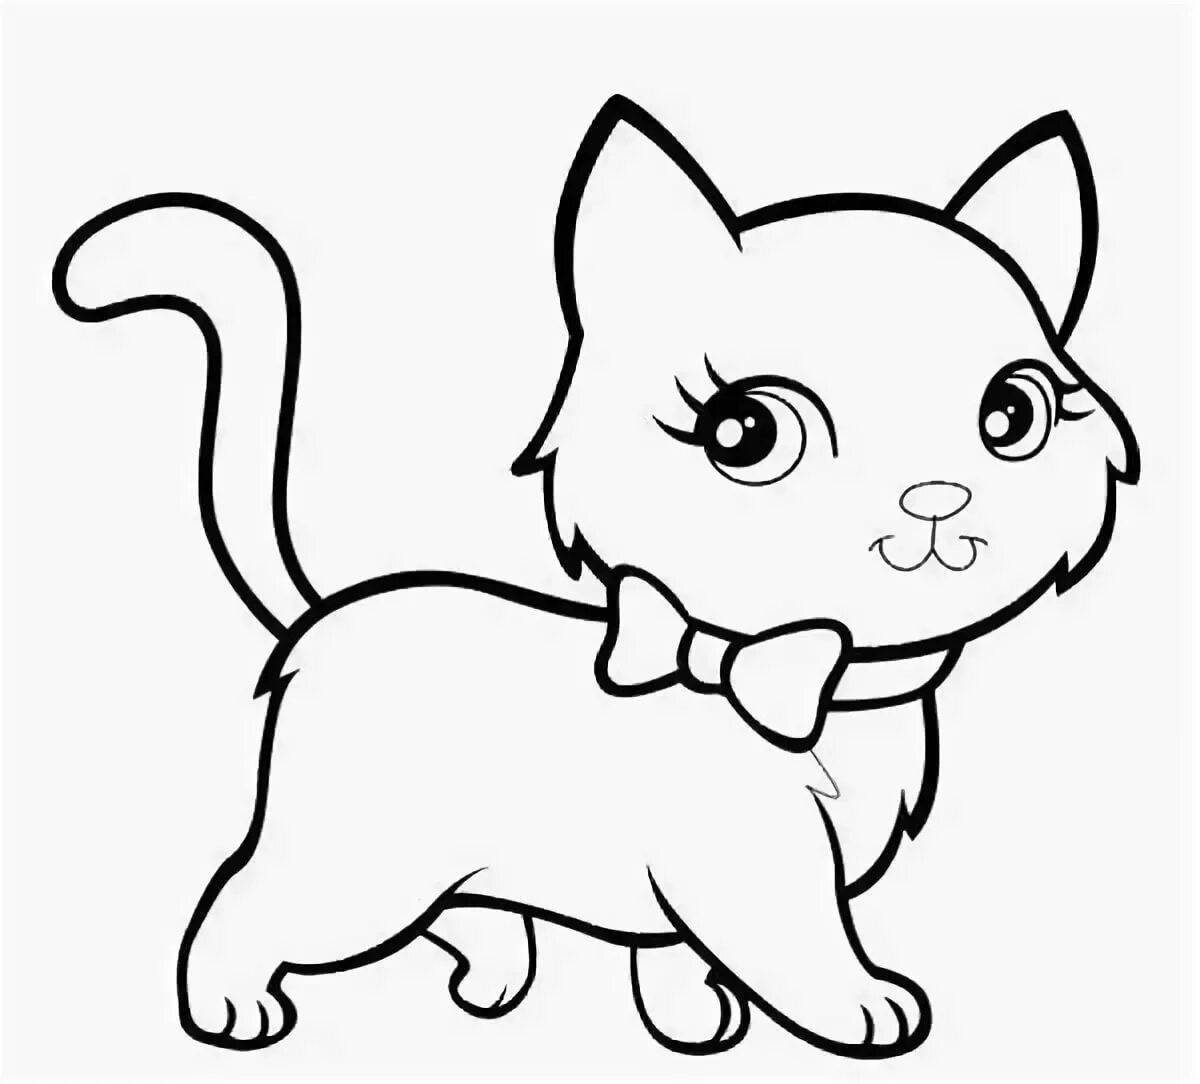 Художественная раскраска кота для детей